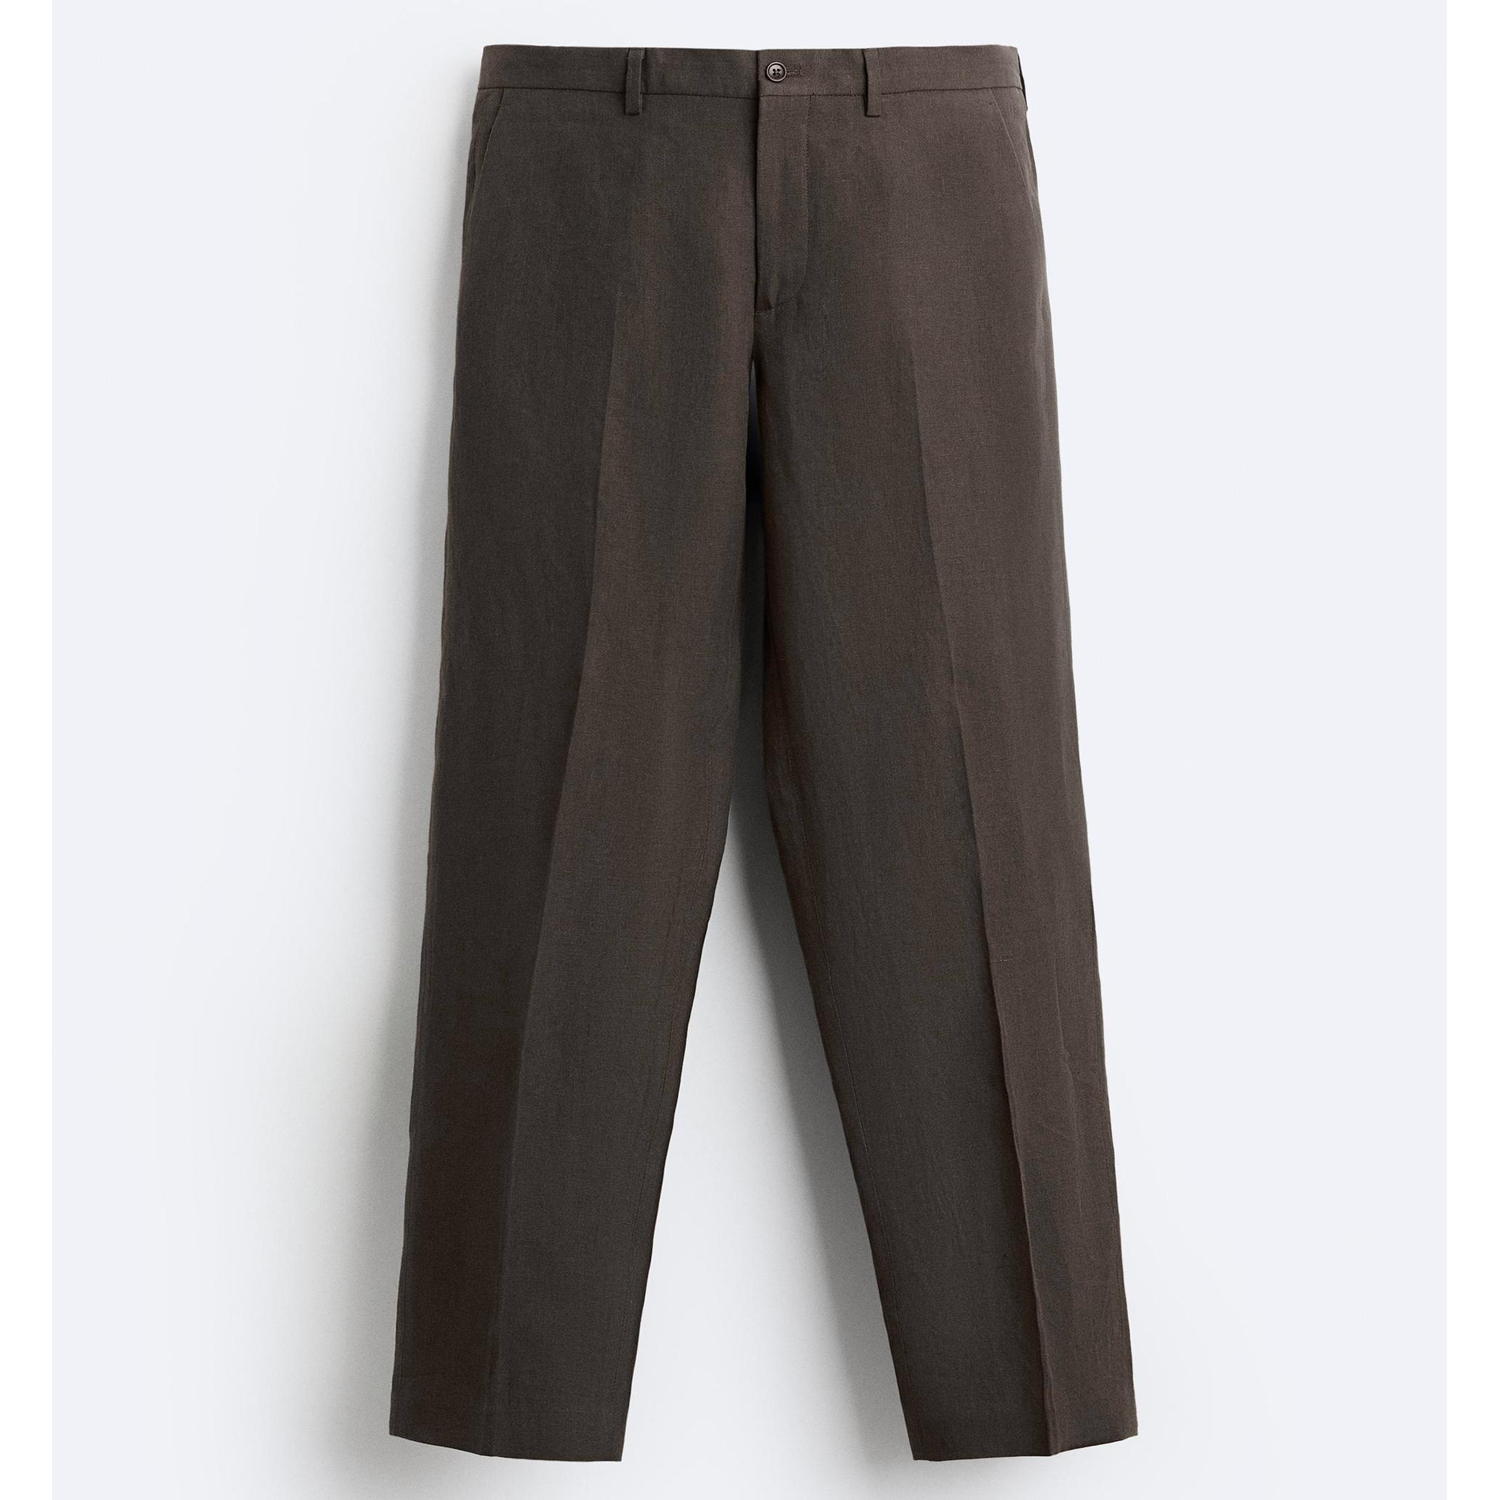 Брюки Zara 100% Linen Suit, коричневый брюки zara jacquard suit черный